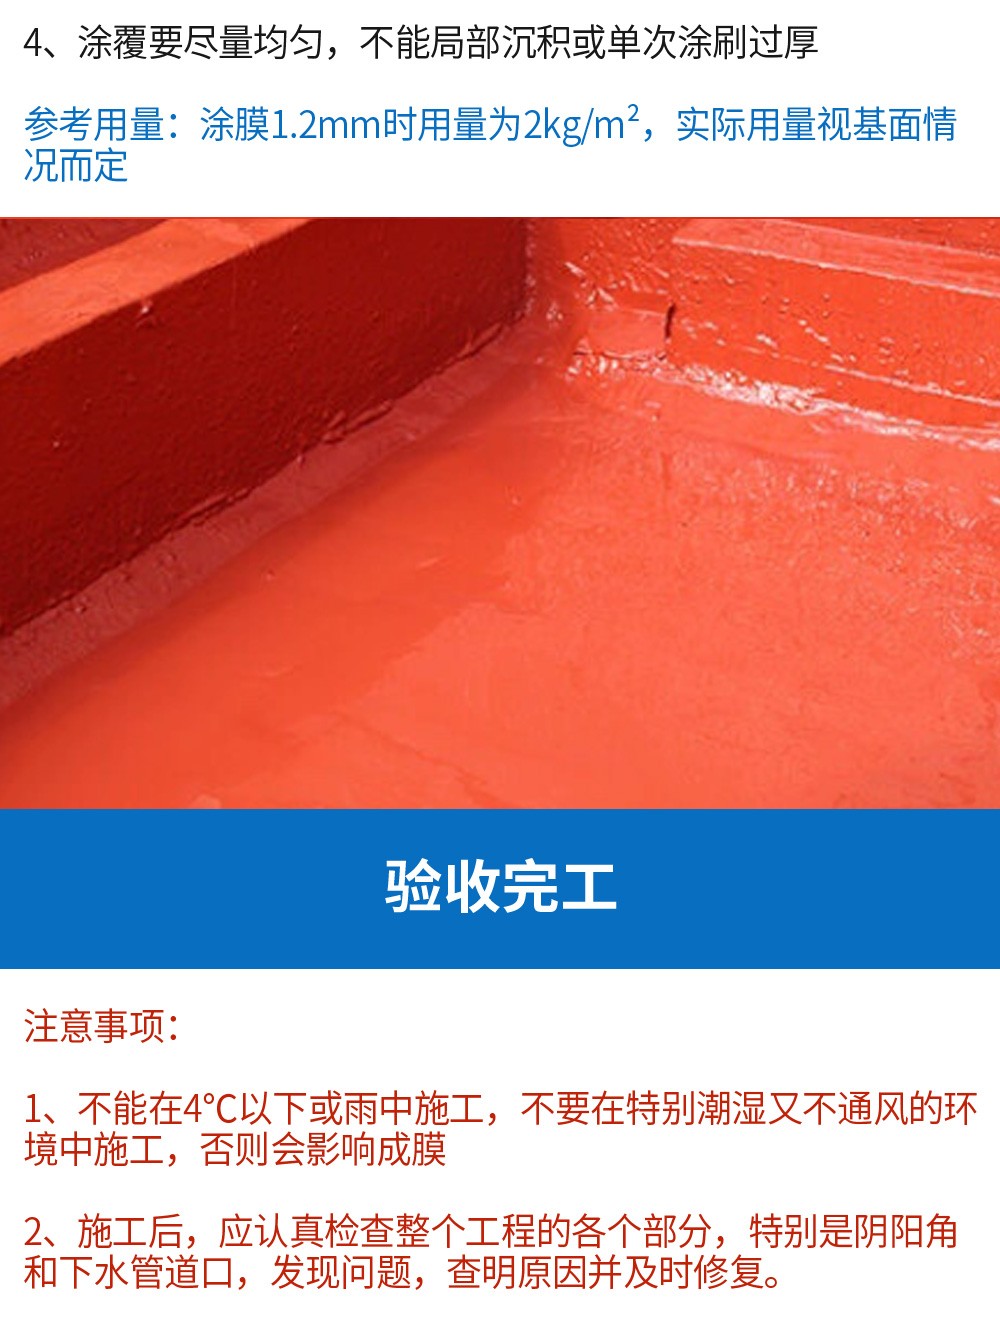 红橡胶防水材料